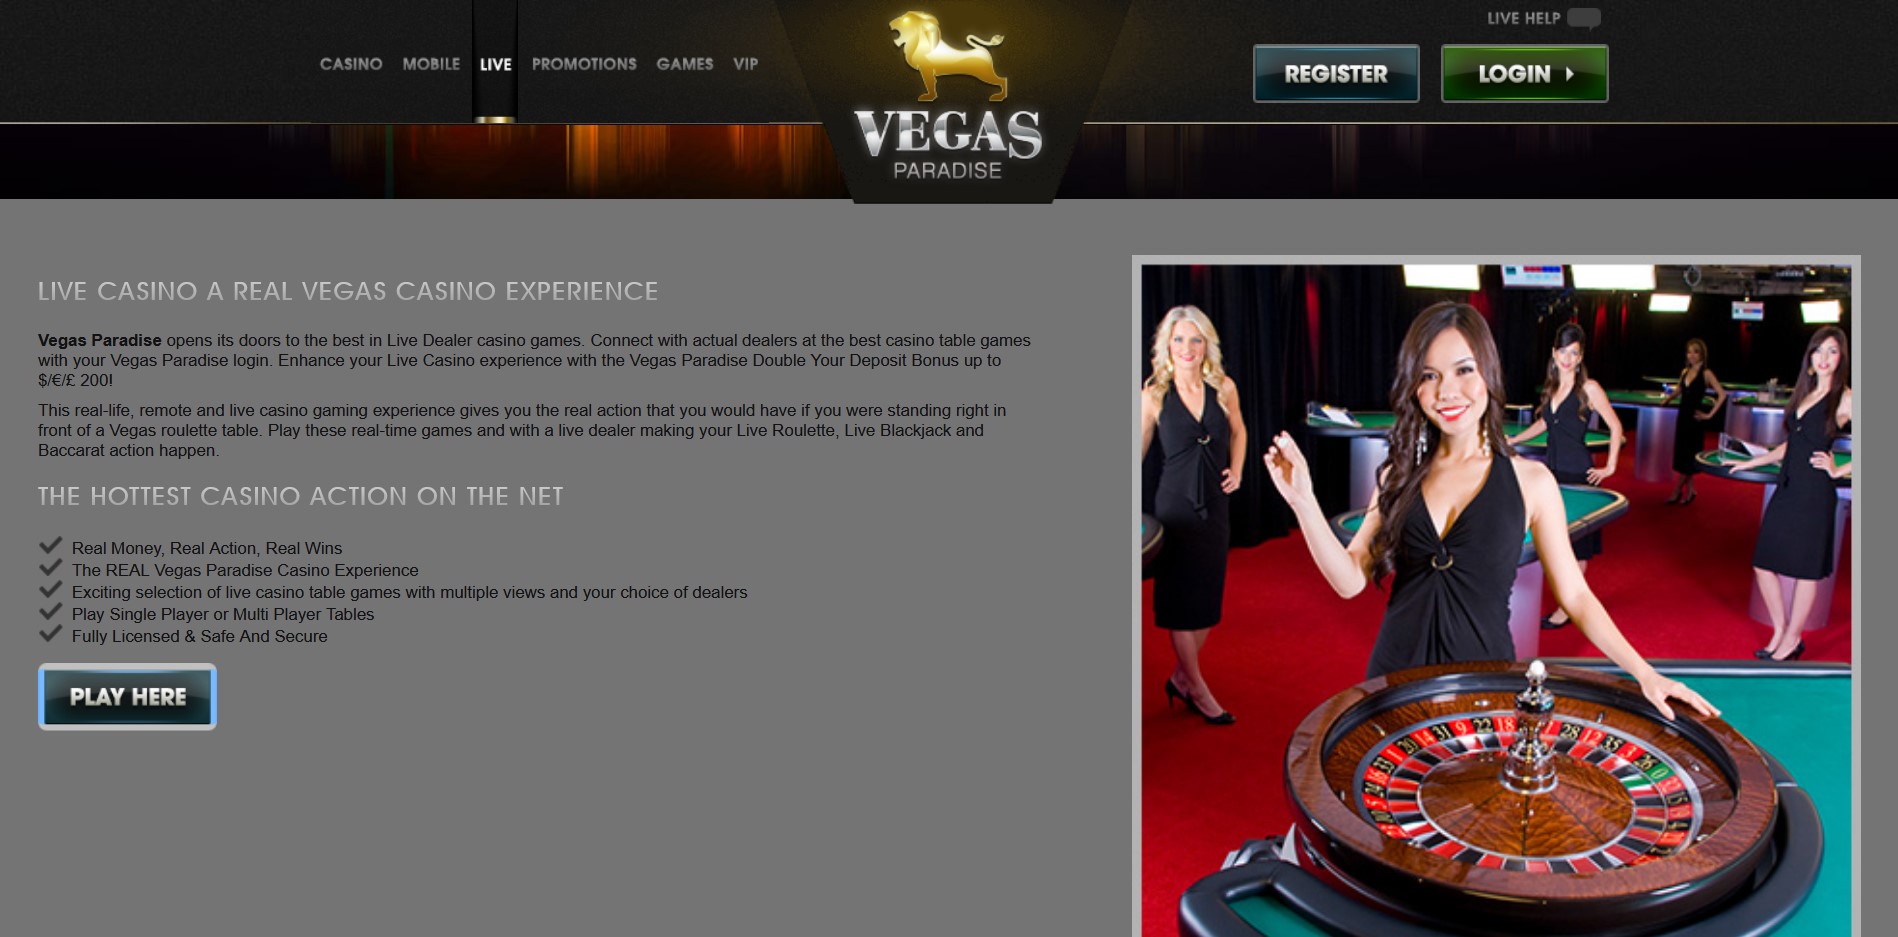 VegasParadise Casino Live Dealer Games